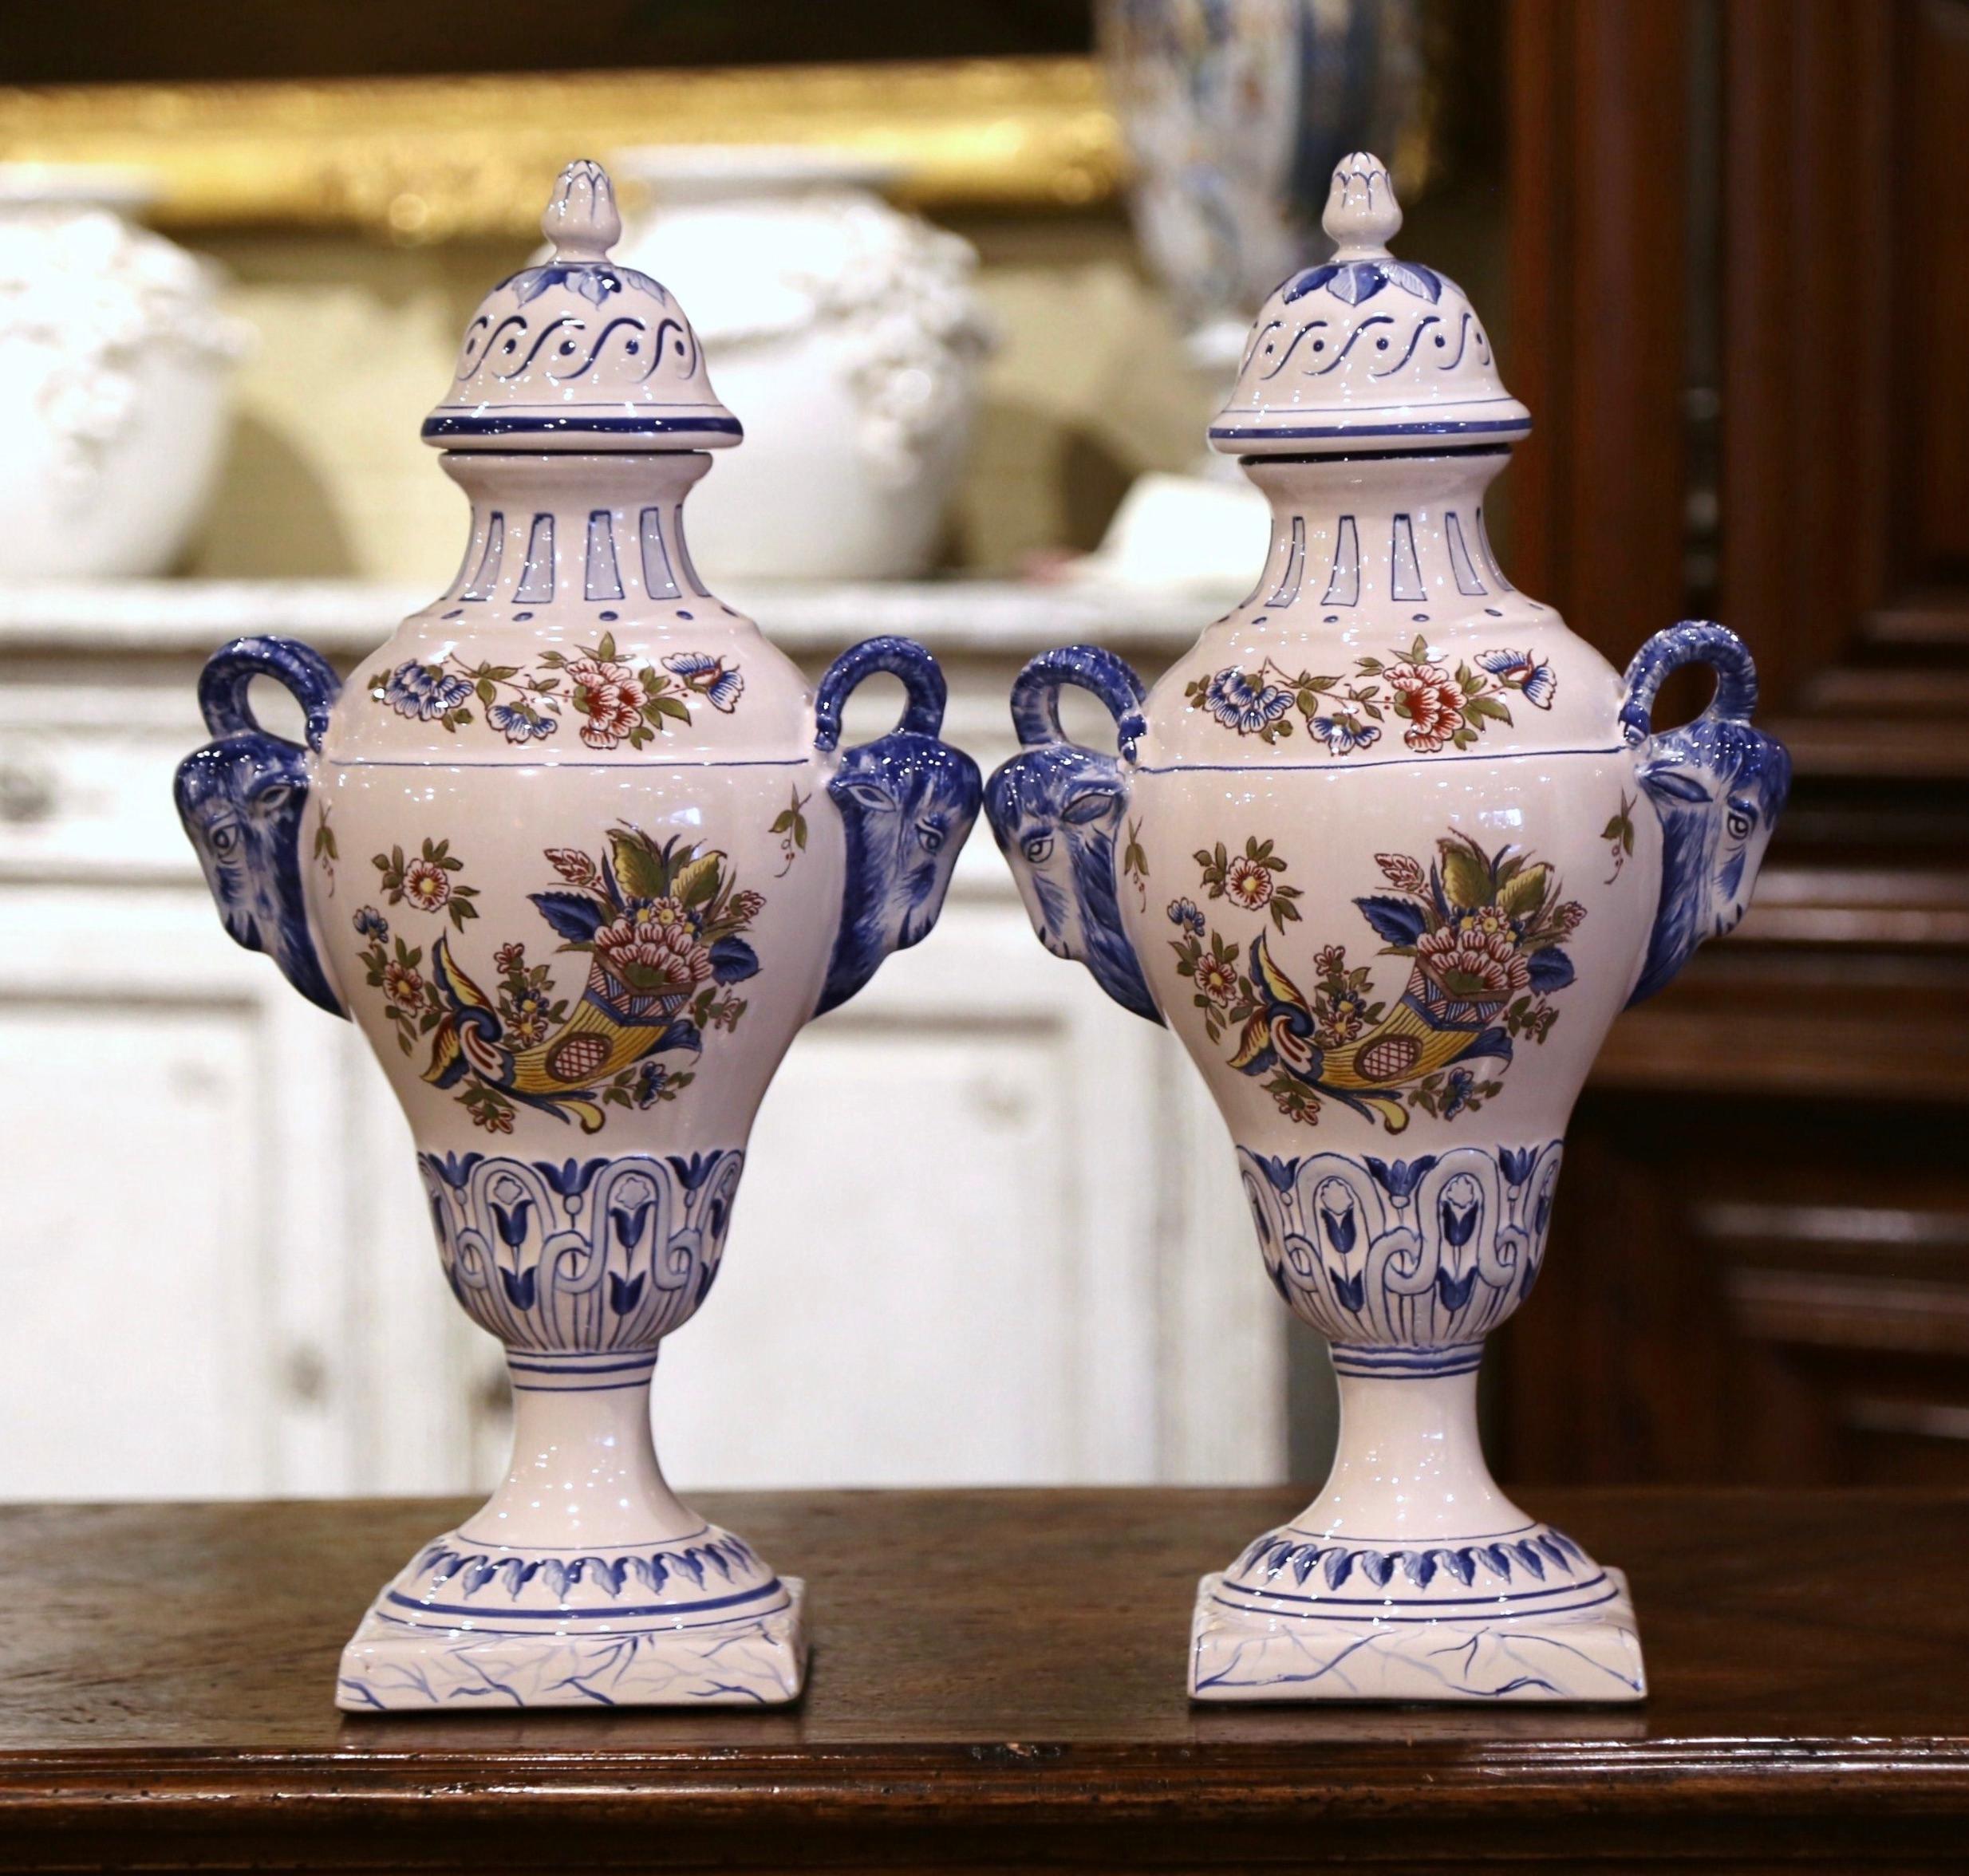 Diese eleganten, antiken Urnen wurden um 1970 in Luneville, Frankreich, hergestellt. Die hohen Keramikvasen stehen auf quadratischen Sockeln über einem bombenförmigen Korpus, der mit Widderkopfgriffen verziert ist, und sind mit einem kegelförmigen